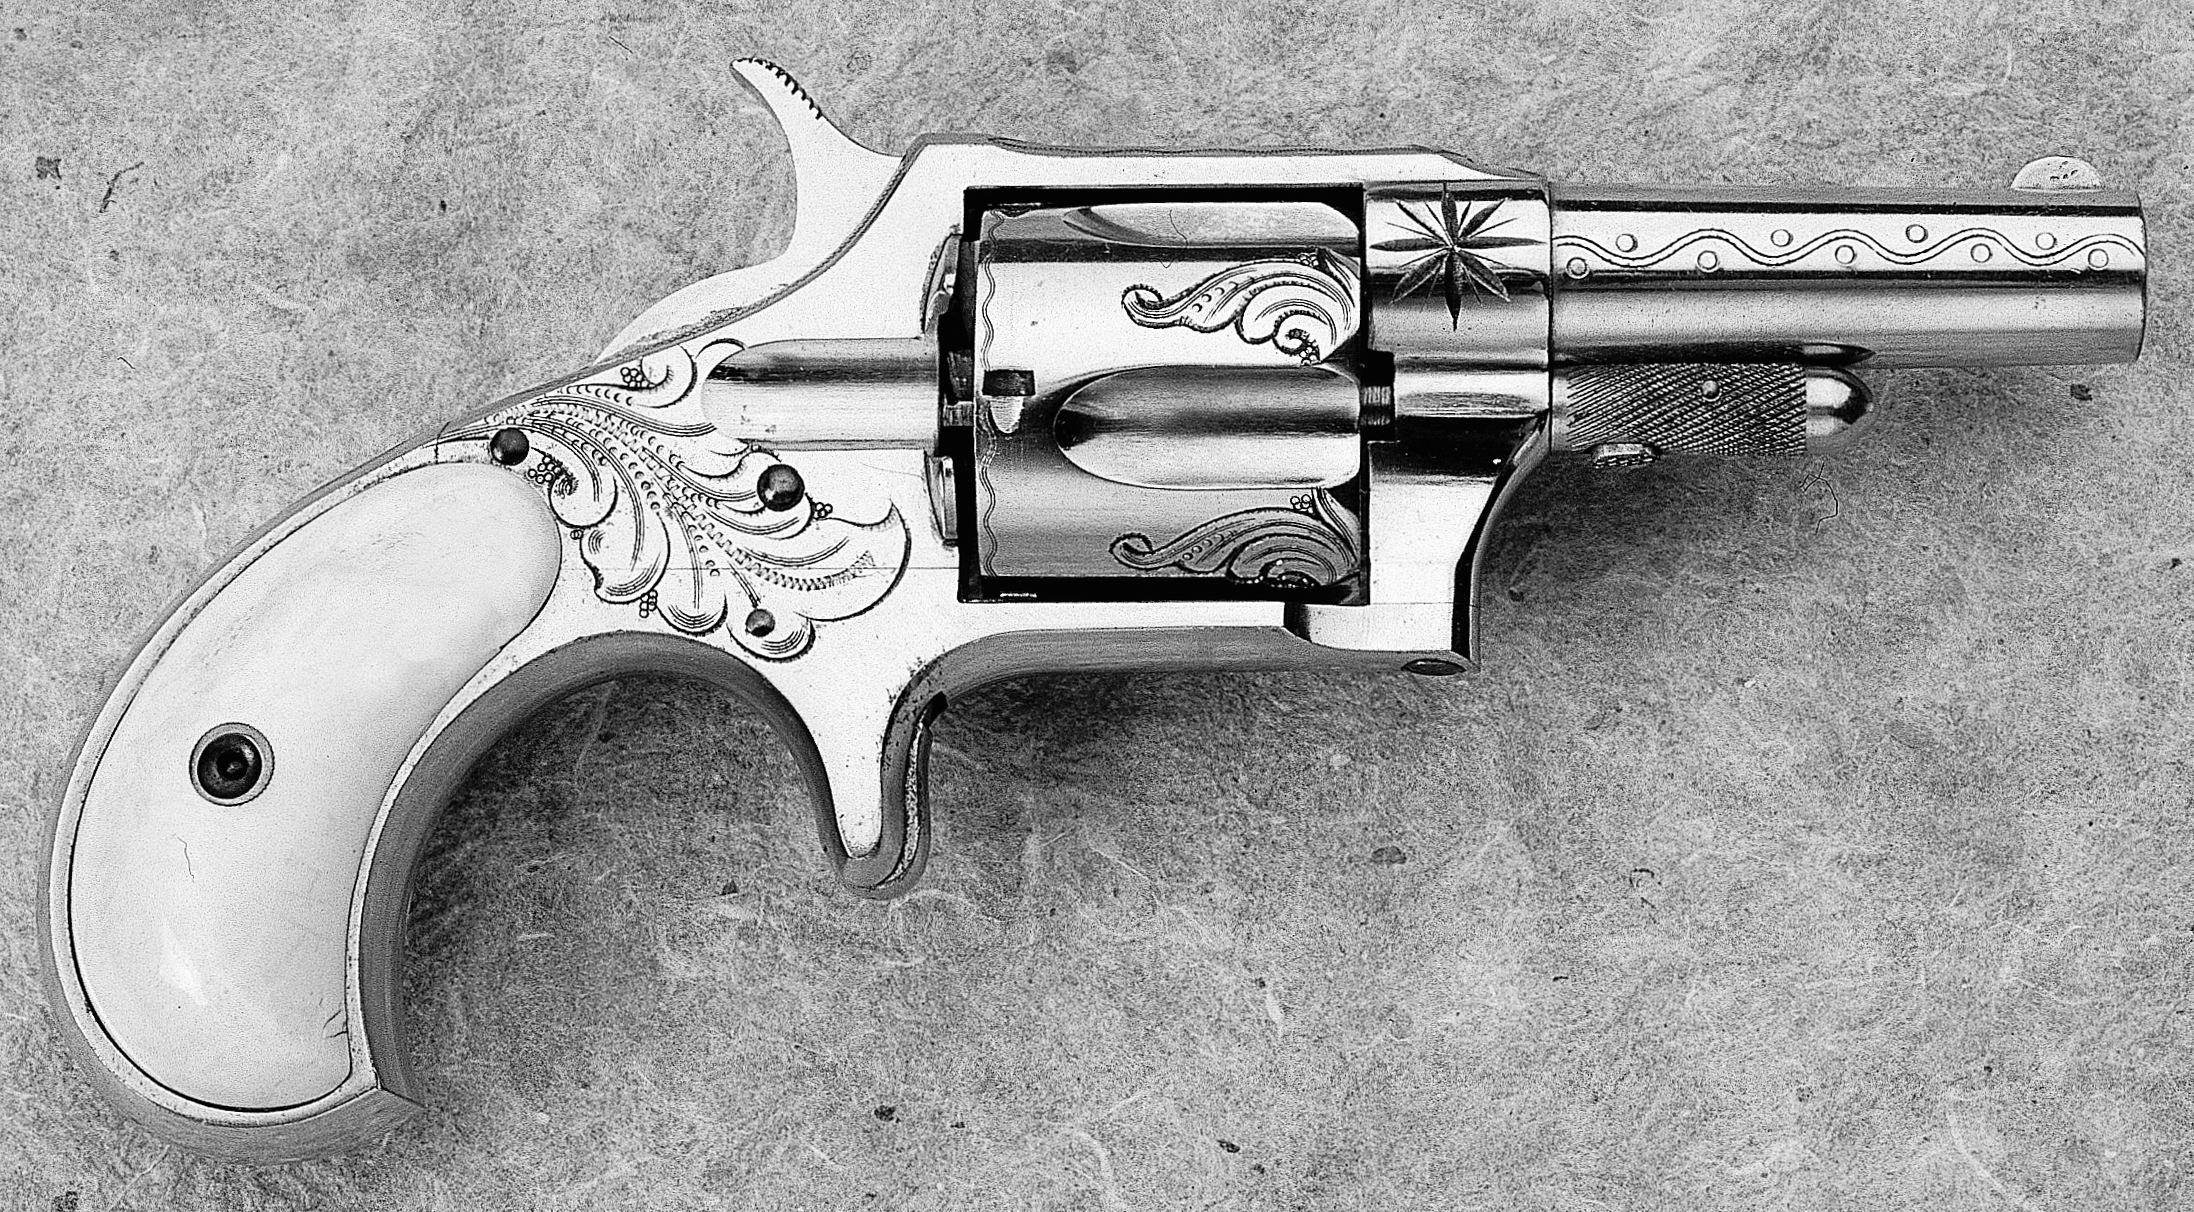 New No. 4 Revolver